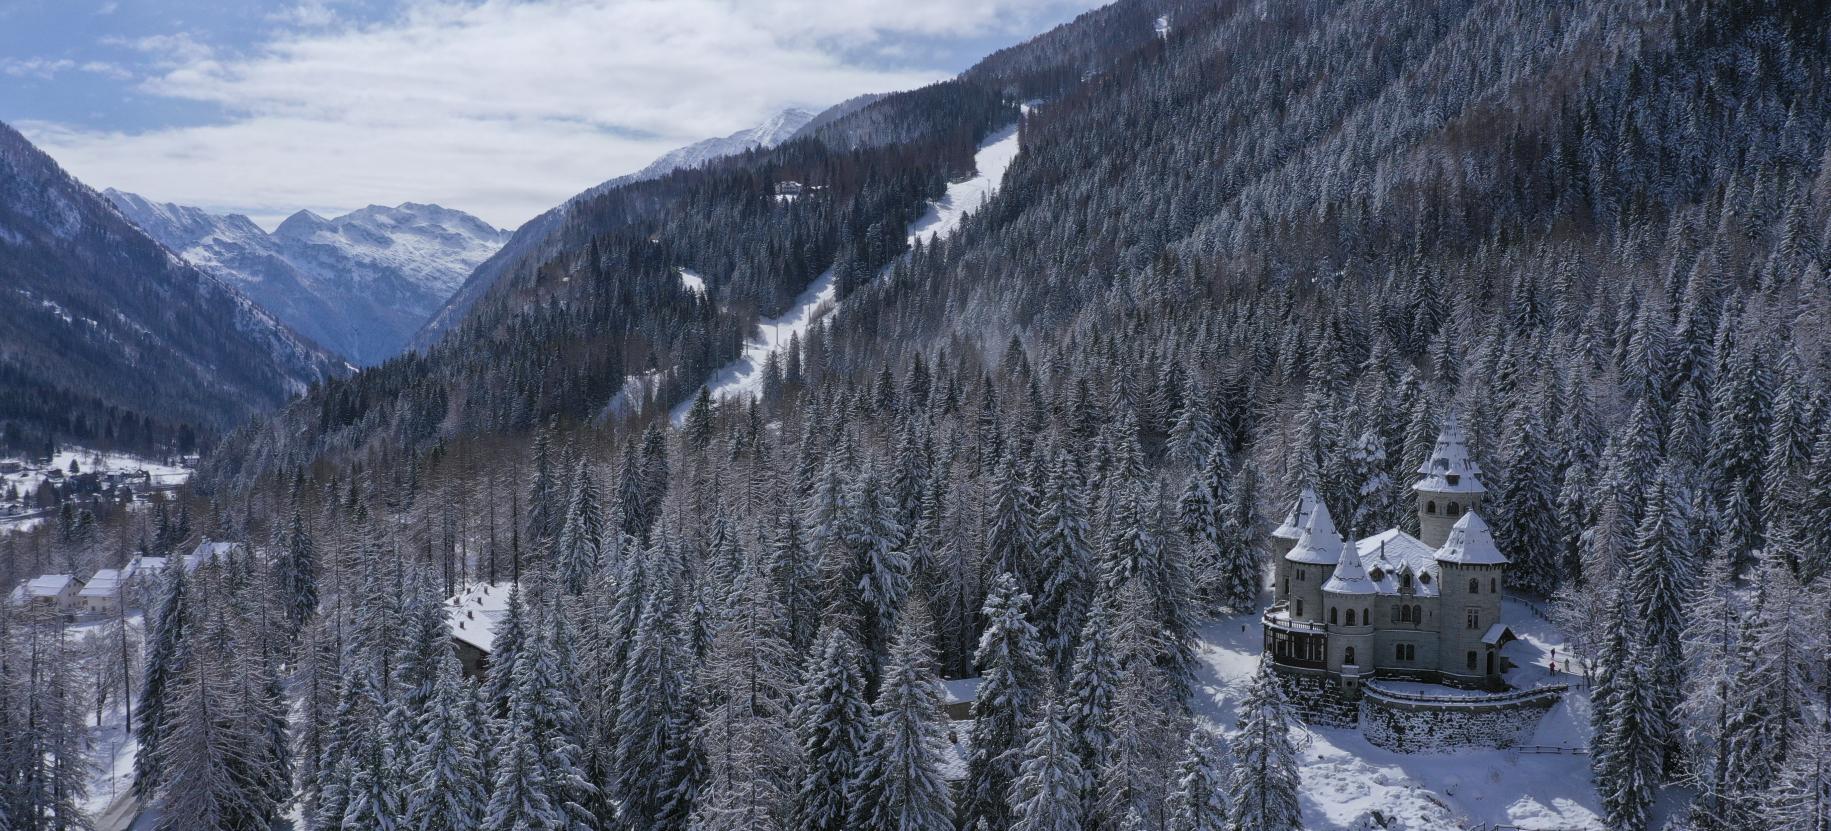 Castel Savoia in veste invernale